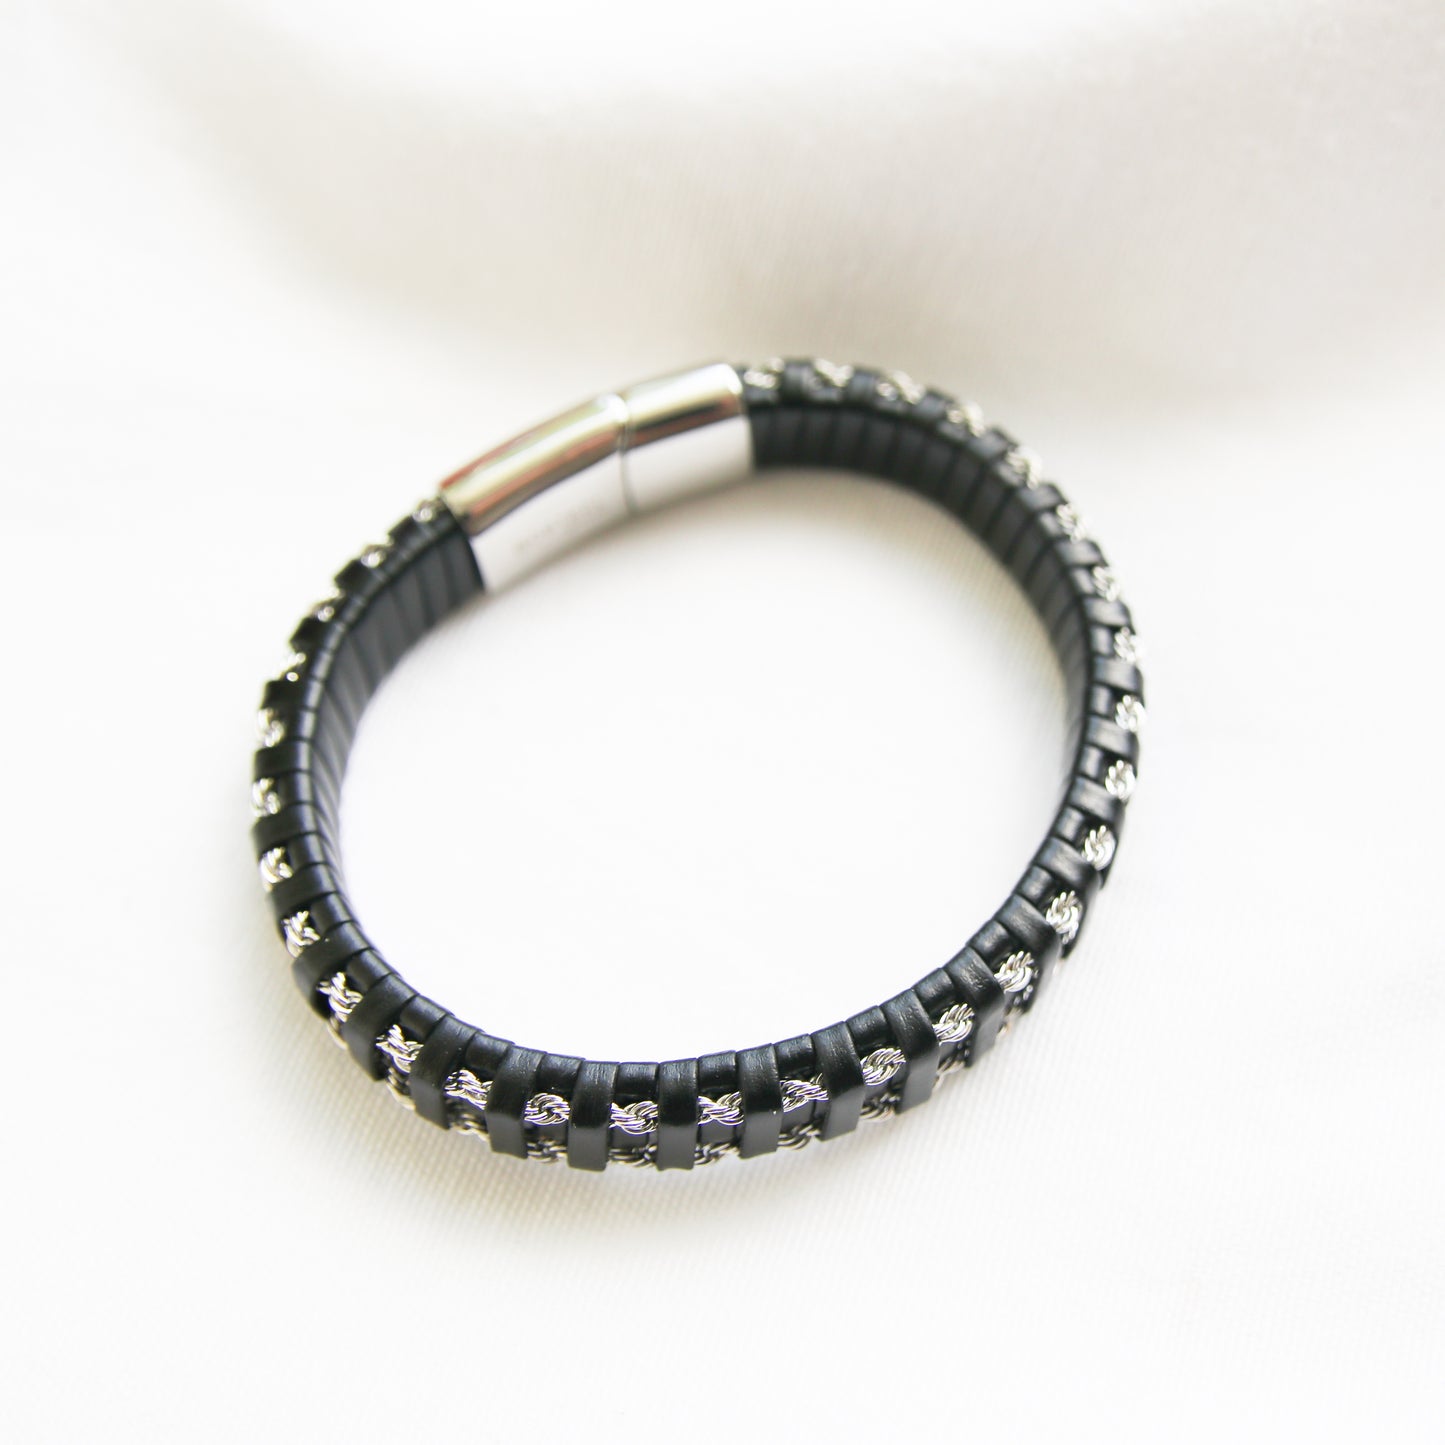 John Black Leather Stainless Steel Bracelet